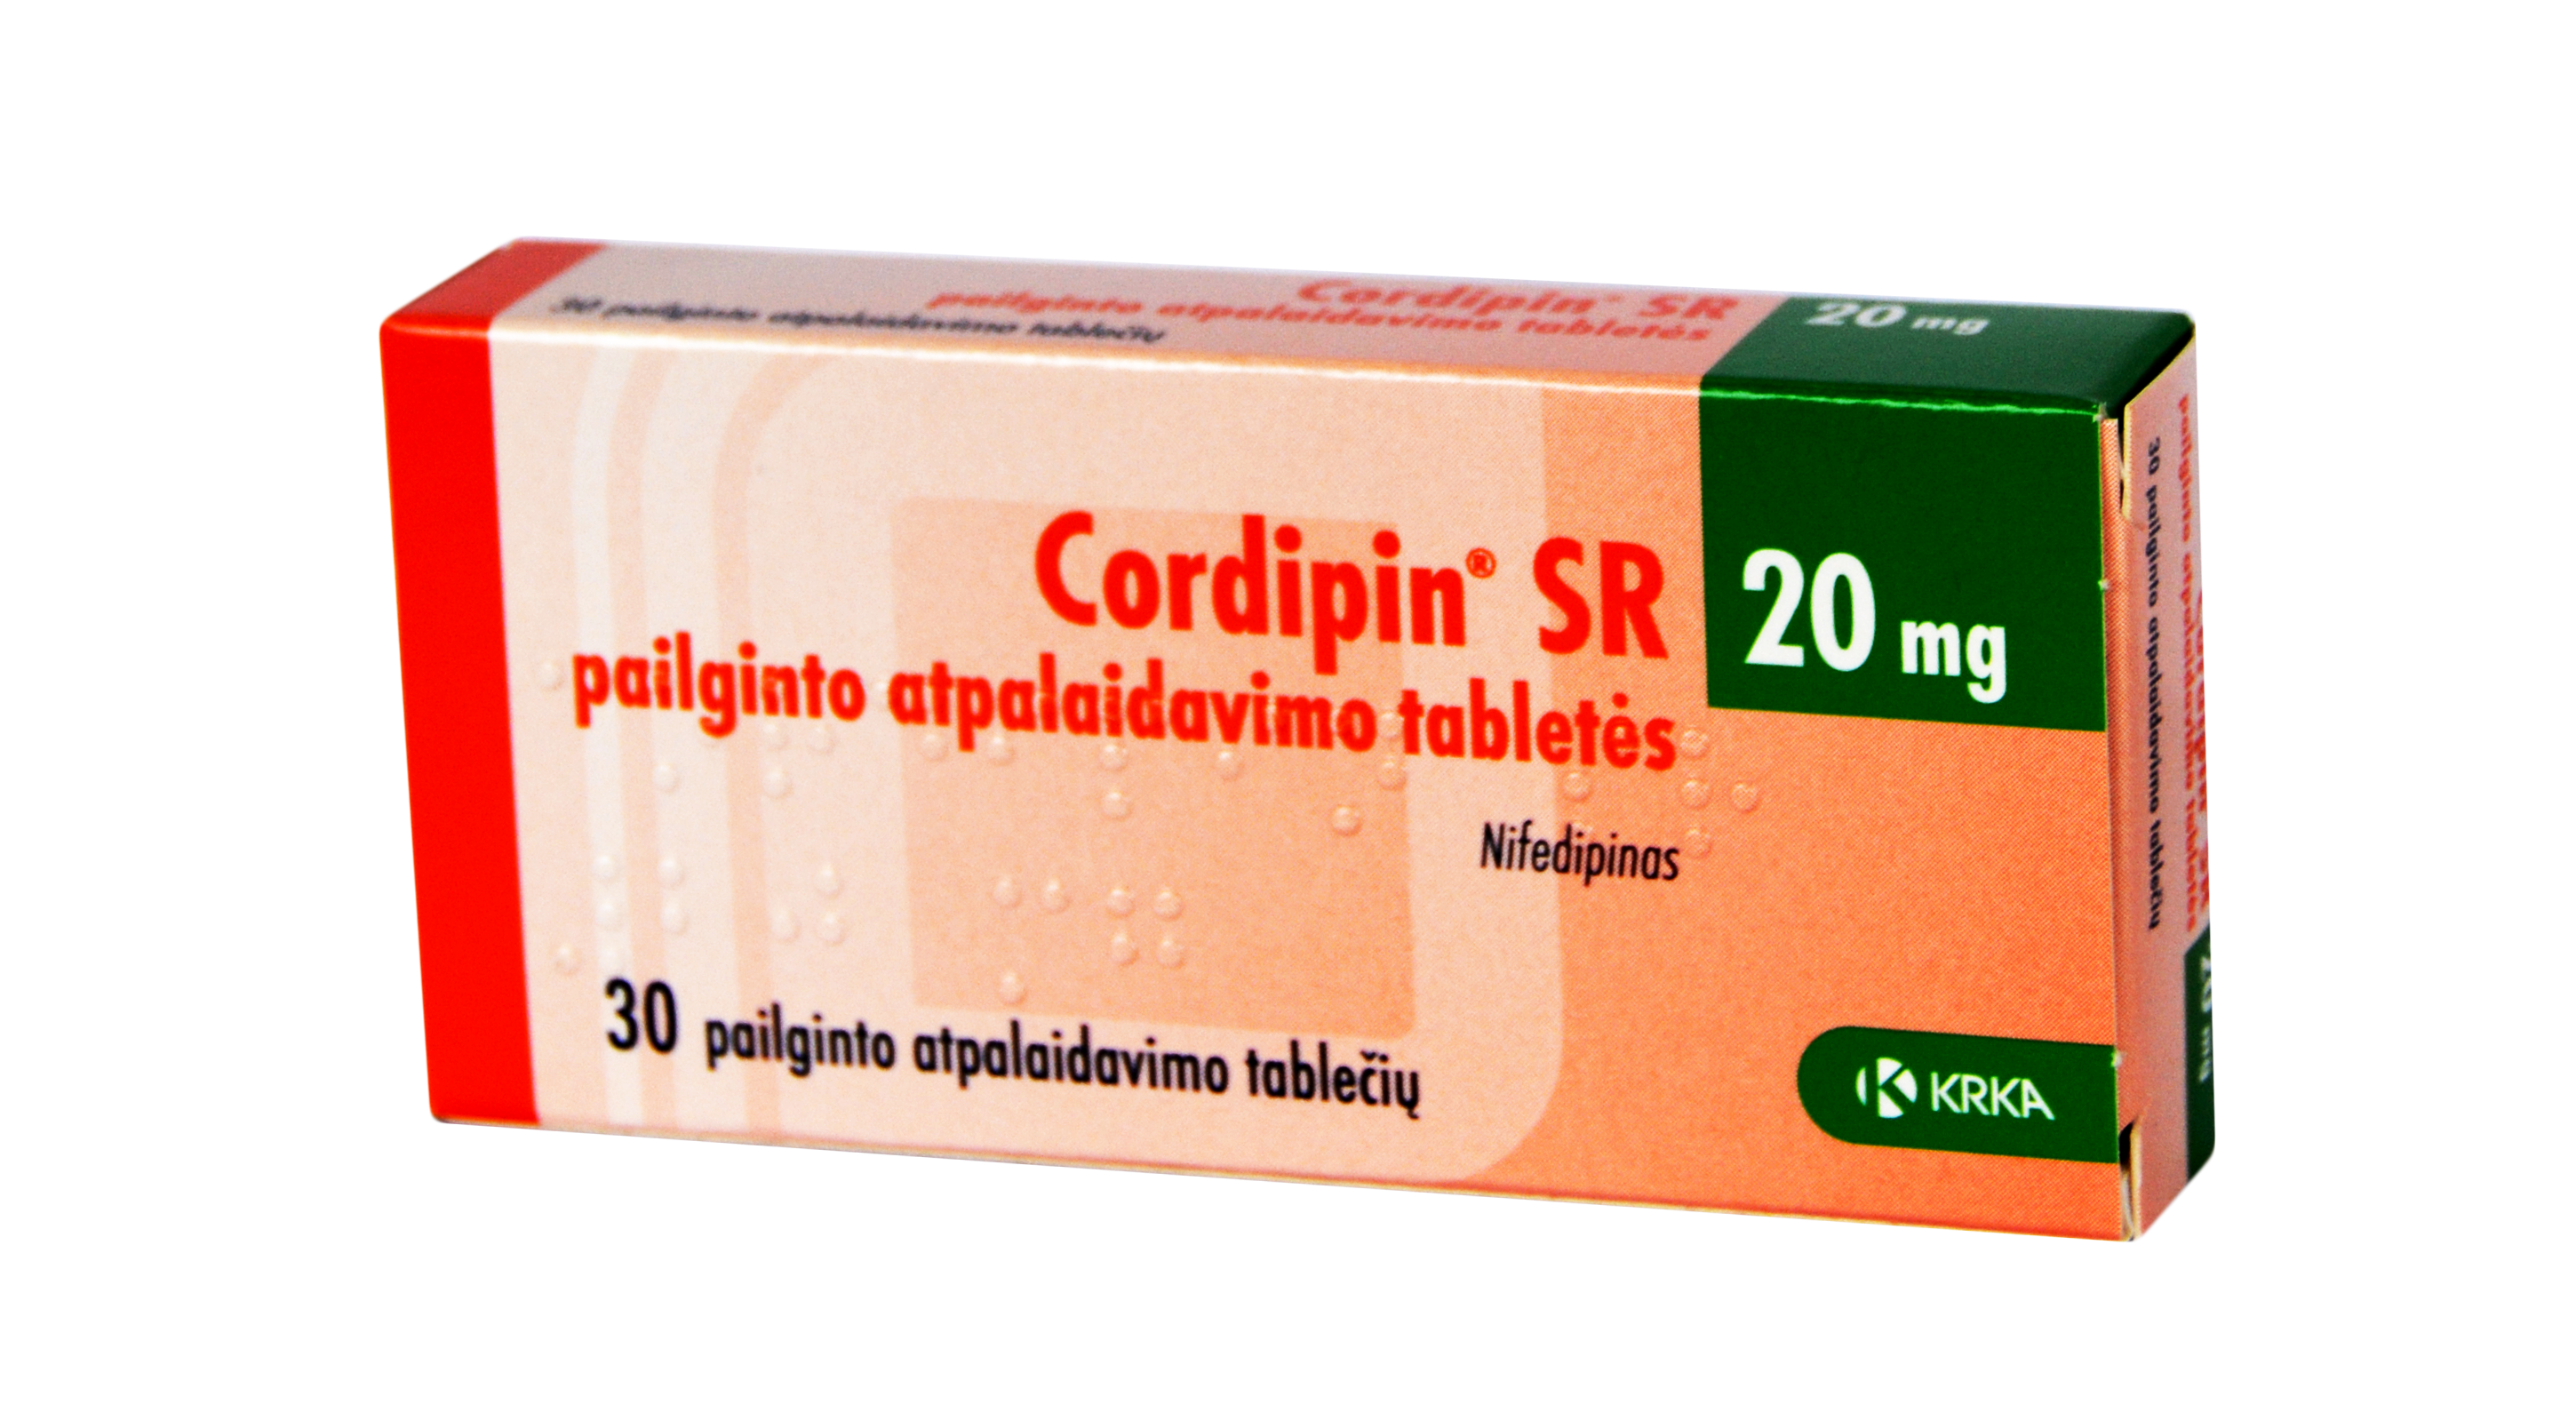 vaistai nuo hipertenzijos - nifedipinas